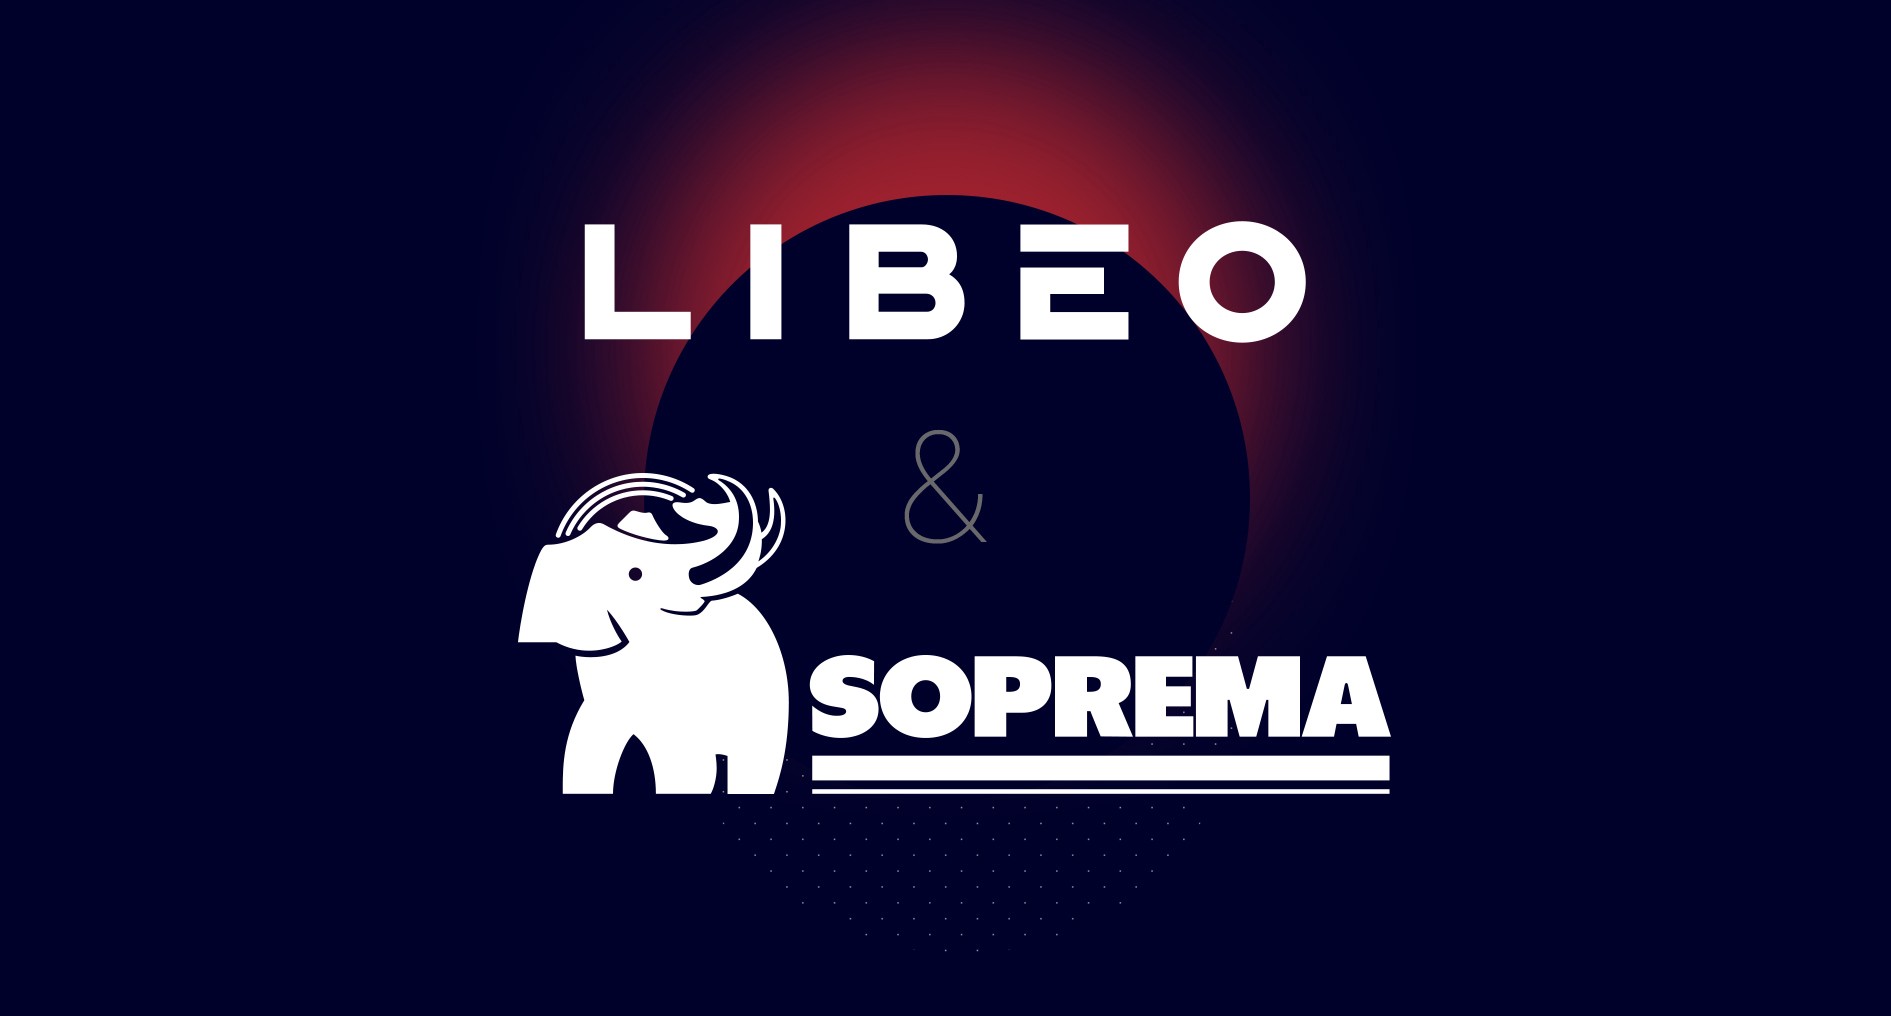 Les logos de Libéo et de Soprema